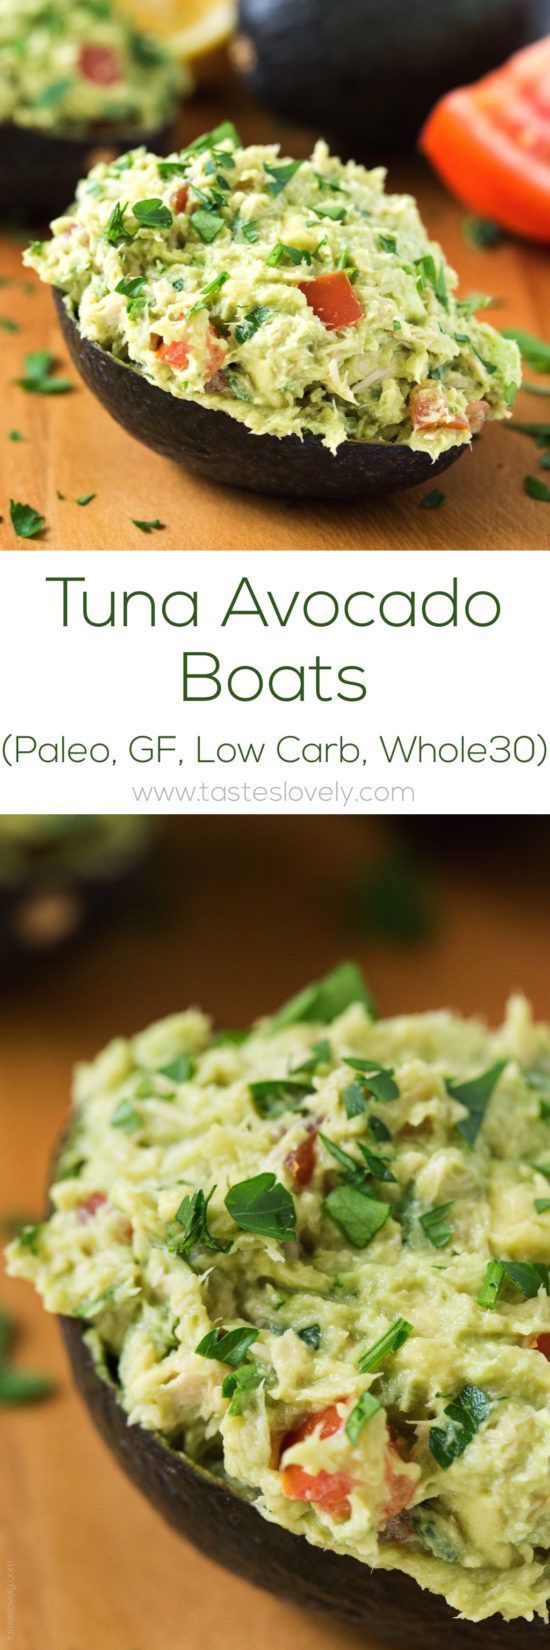 Paleo Tuna Avocado Boats – no mayo, just tuna and avocado! (gluten free, low carb, Whole30)